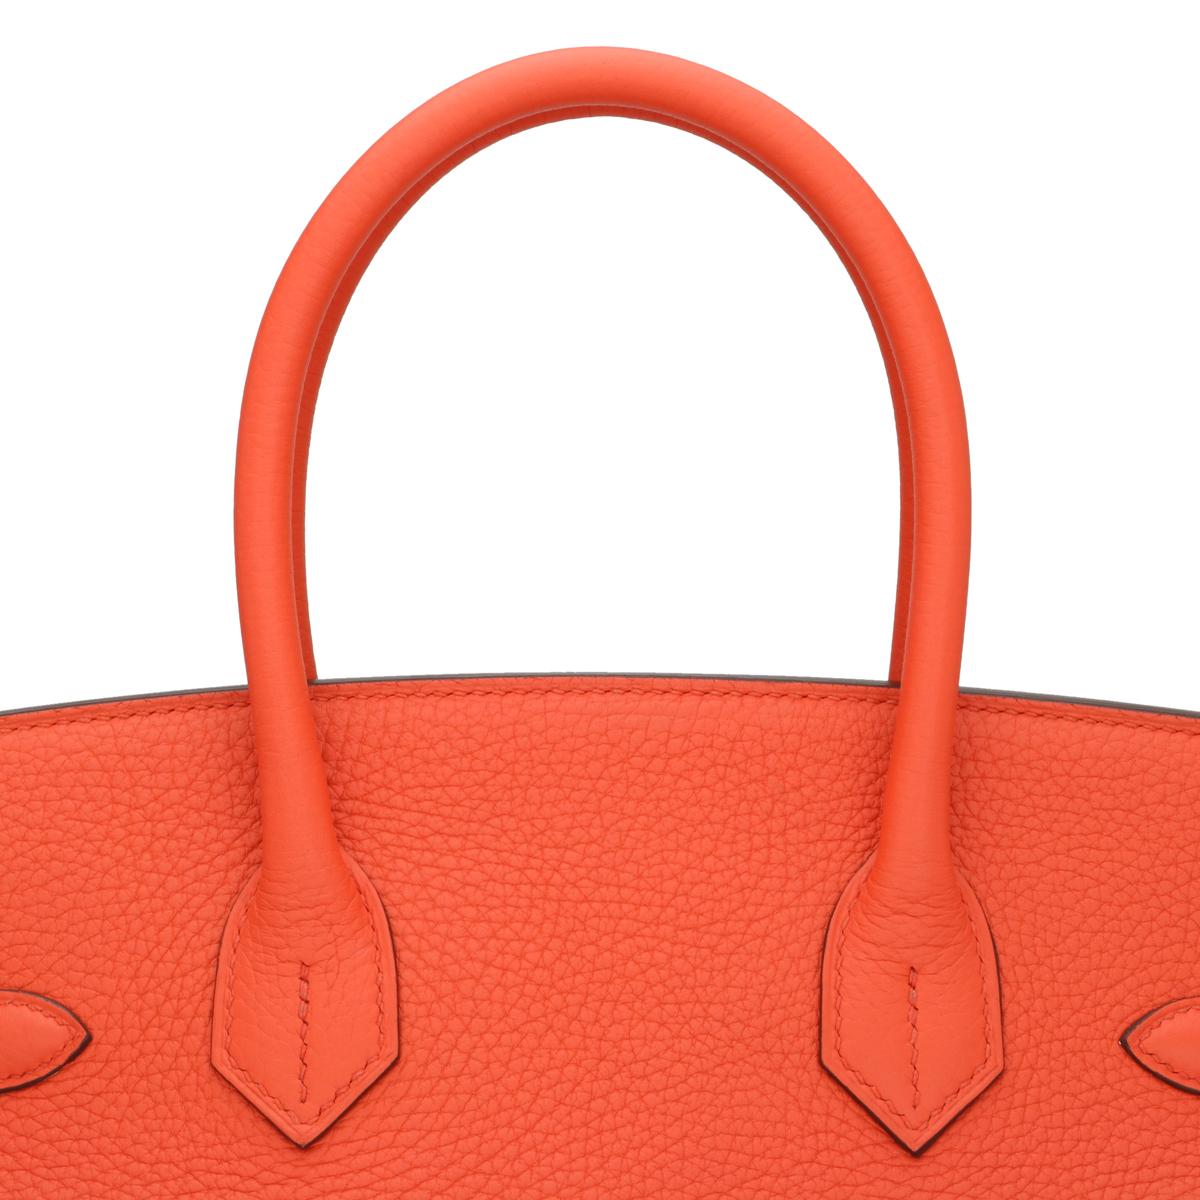 Hermès Birkin Bag 30cm Poppy Orange Togo Leather Palladium Hardware Stamp T 2015 For Sale 9